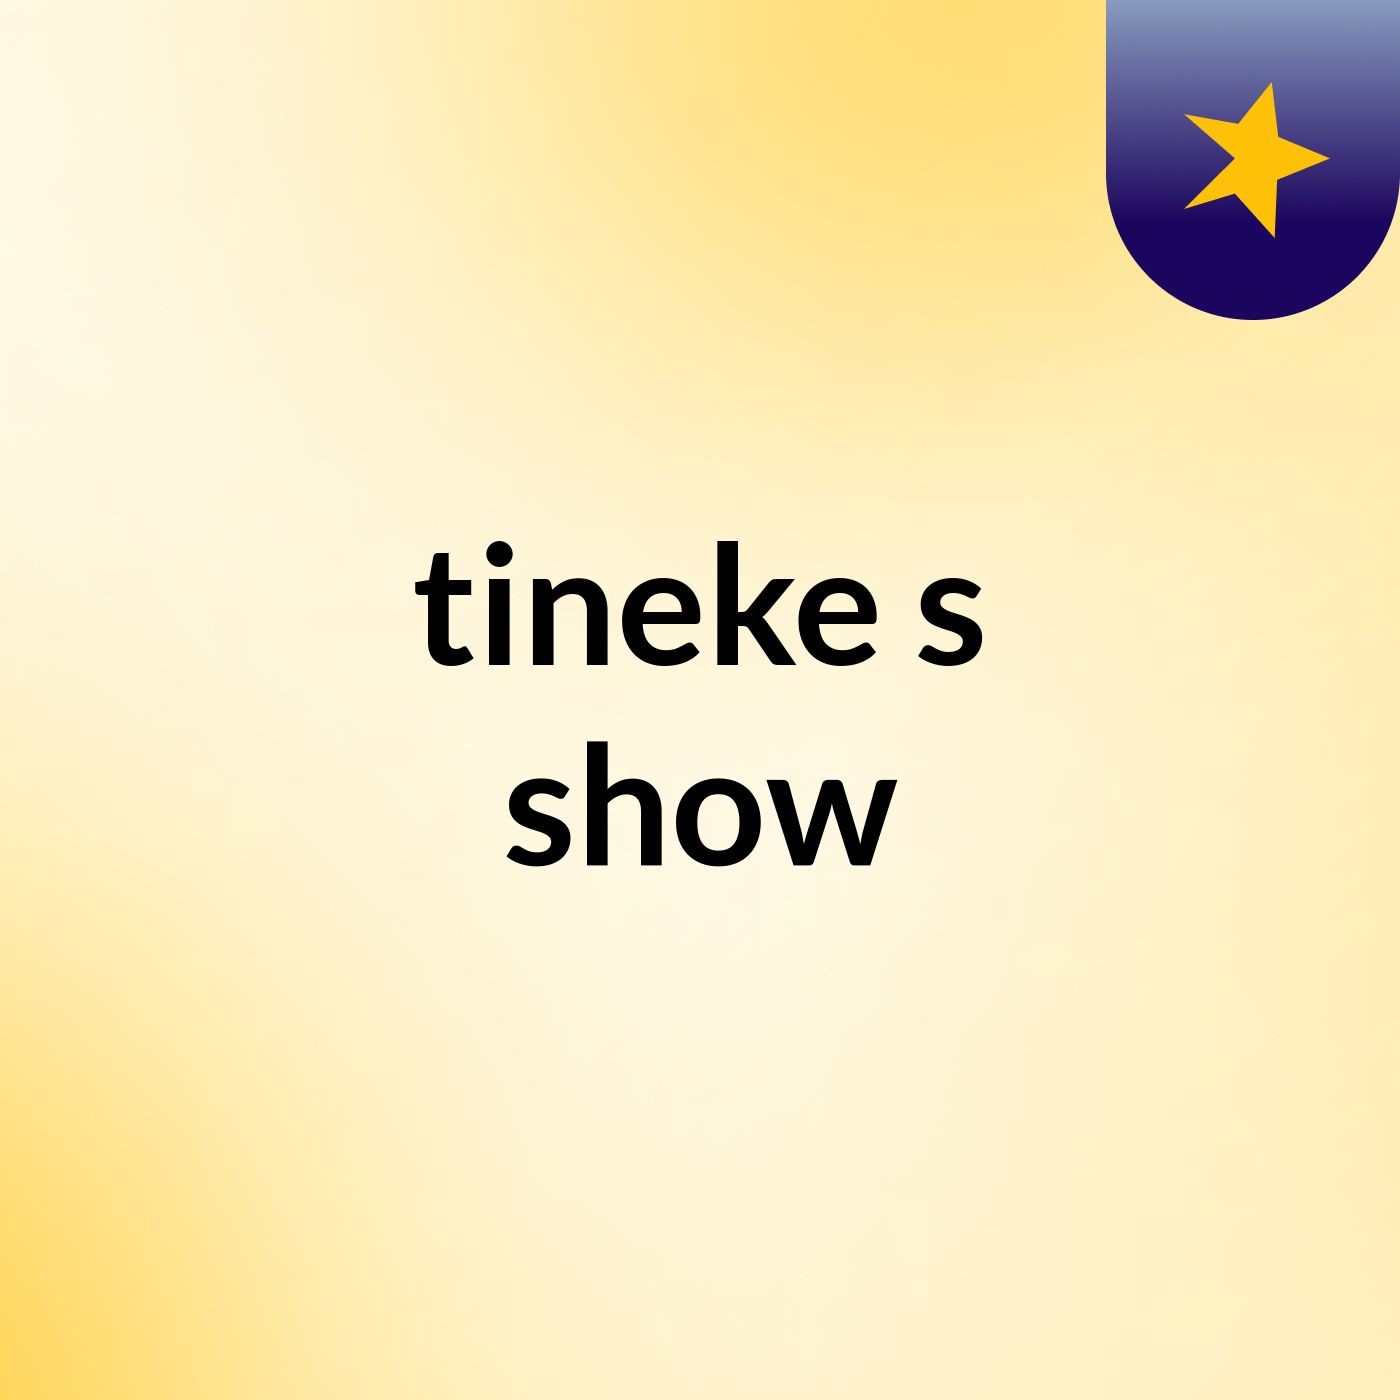 tineke's show